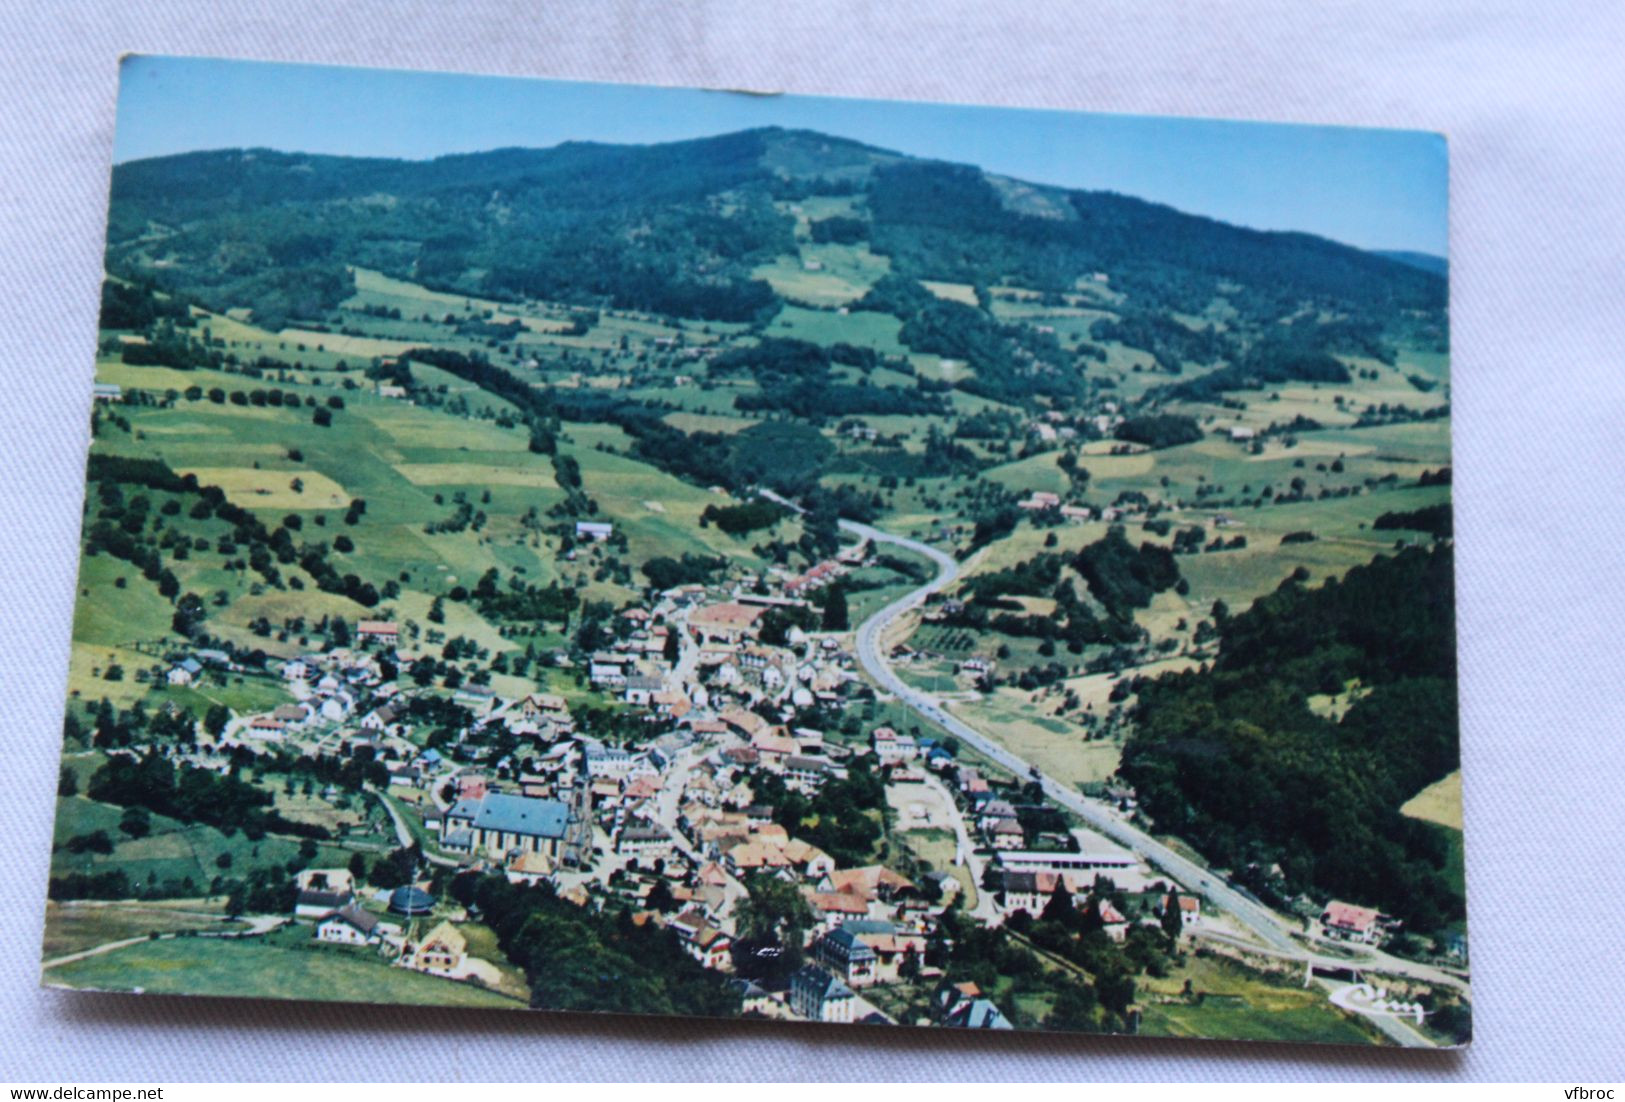 Cpm 1988, Lapoutroie, à L'arrière Plan, Le Col Du Bonhomme, Vue Aérienne, Haut Rhin 68 - Lapoutroie